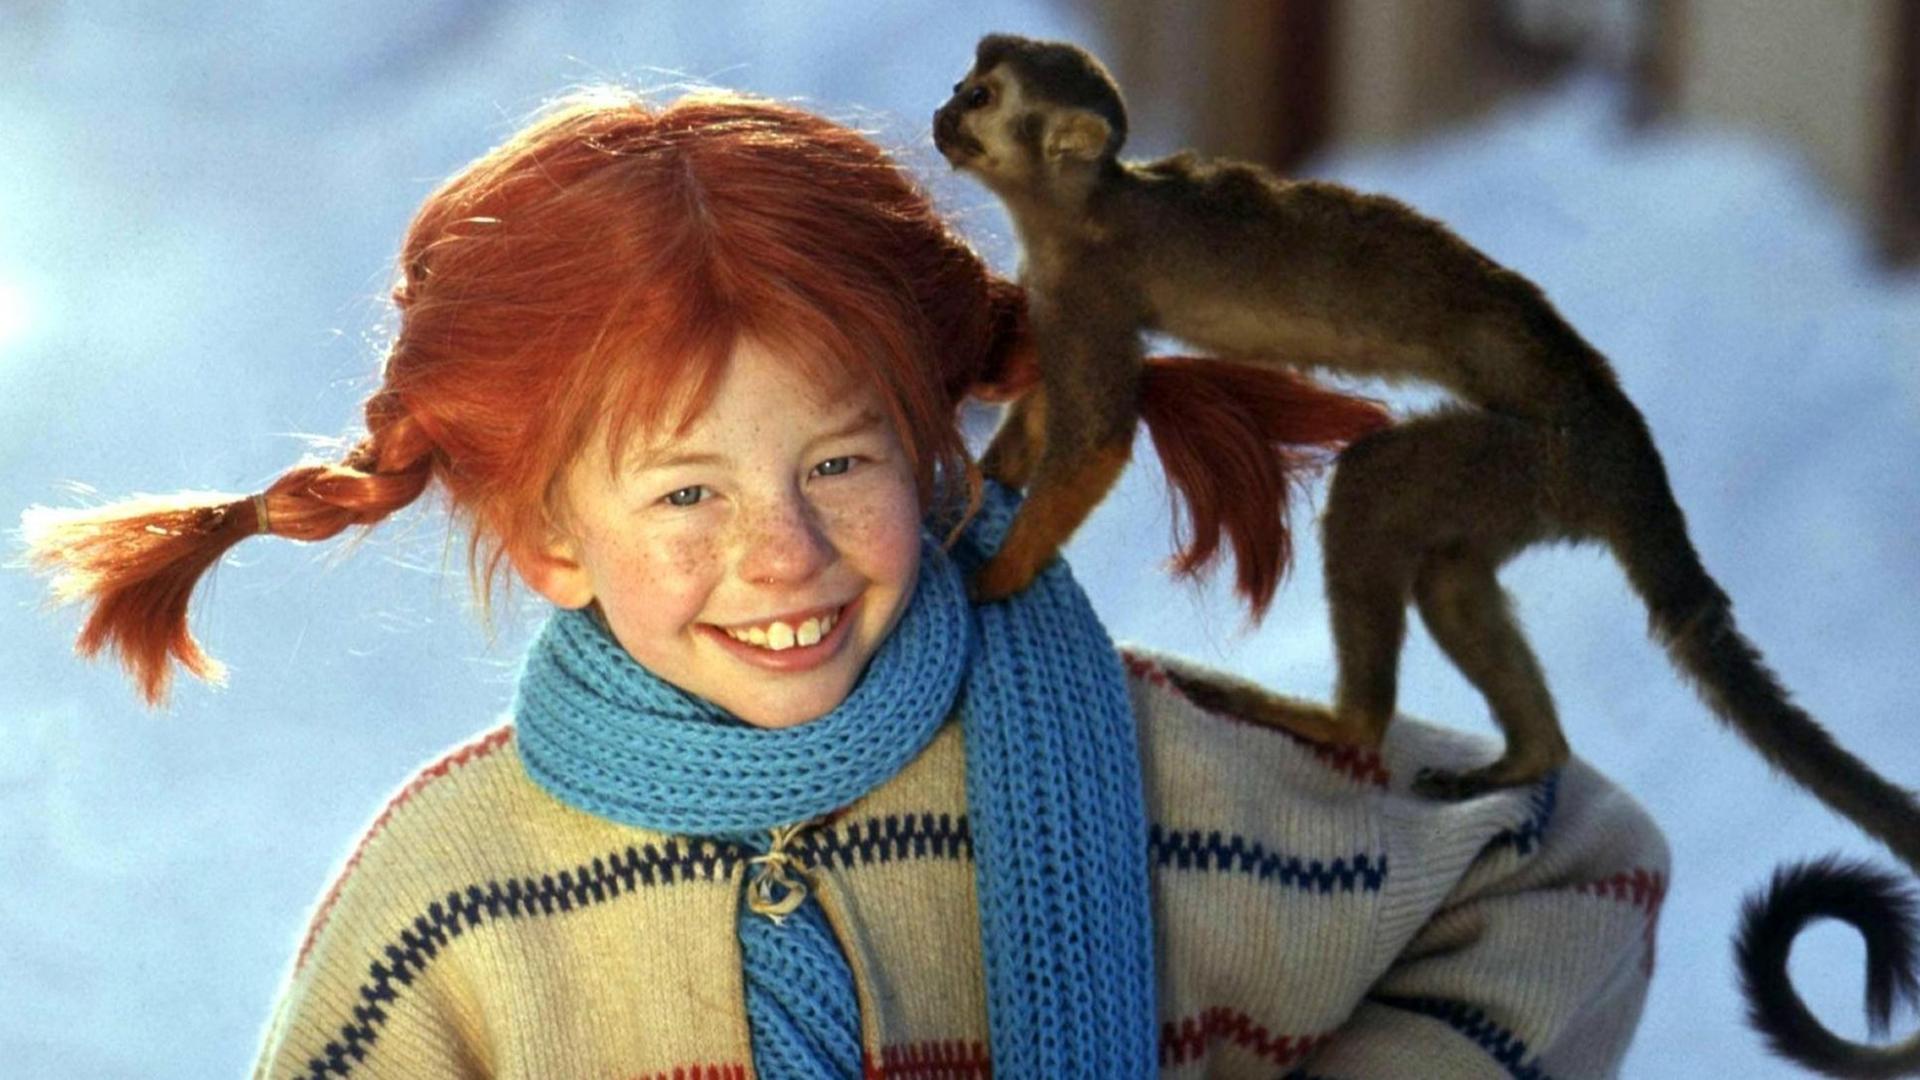 Lächelnd trägt die Schauspielerin Inger Nilsson in einem Film von 1968 als «Pippi Langstrumpf» an einem kalten Wintertag ihr Äffchen «Herr Nilsson» auf der Schulter spazieren (Szenenfoto von 1968).